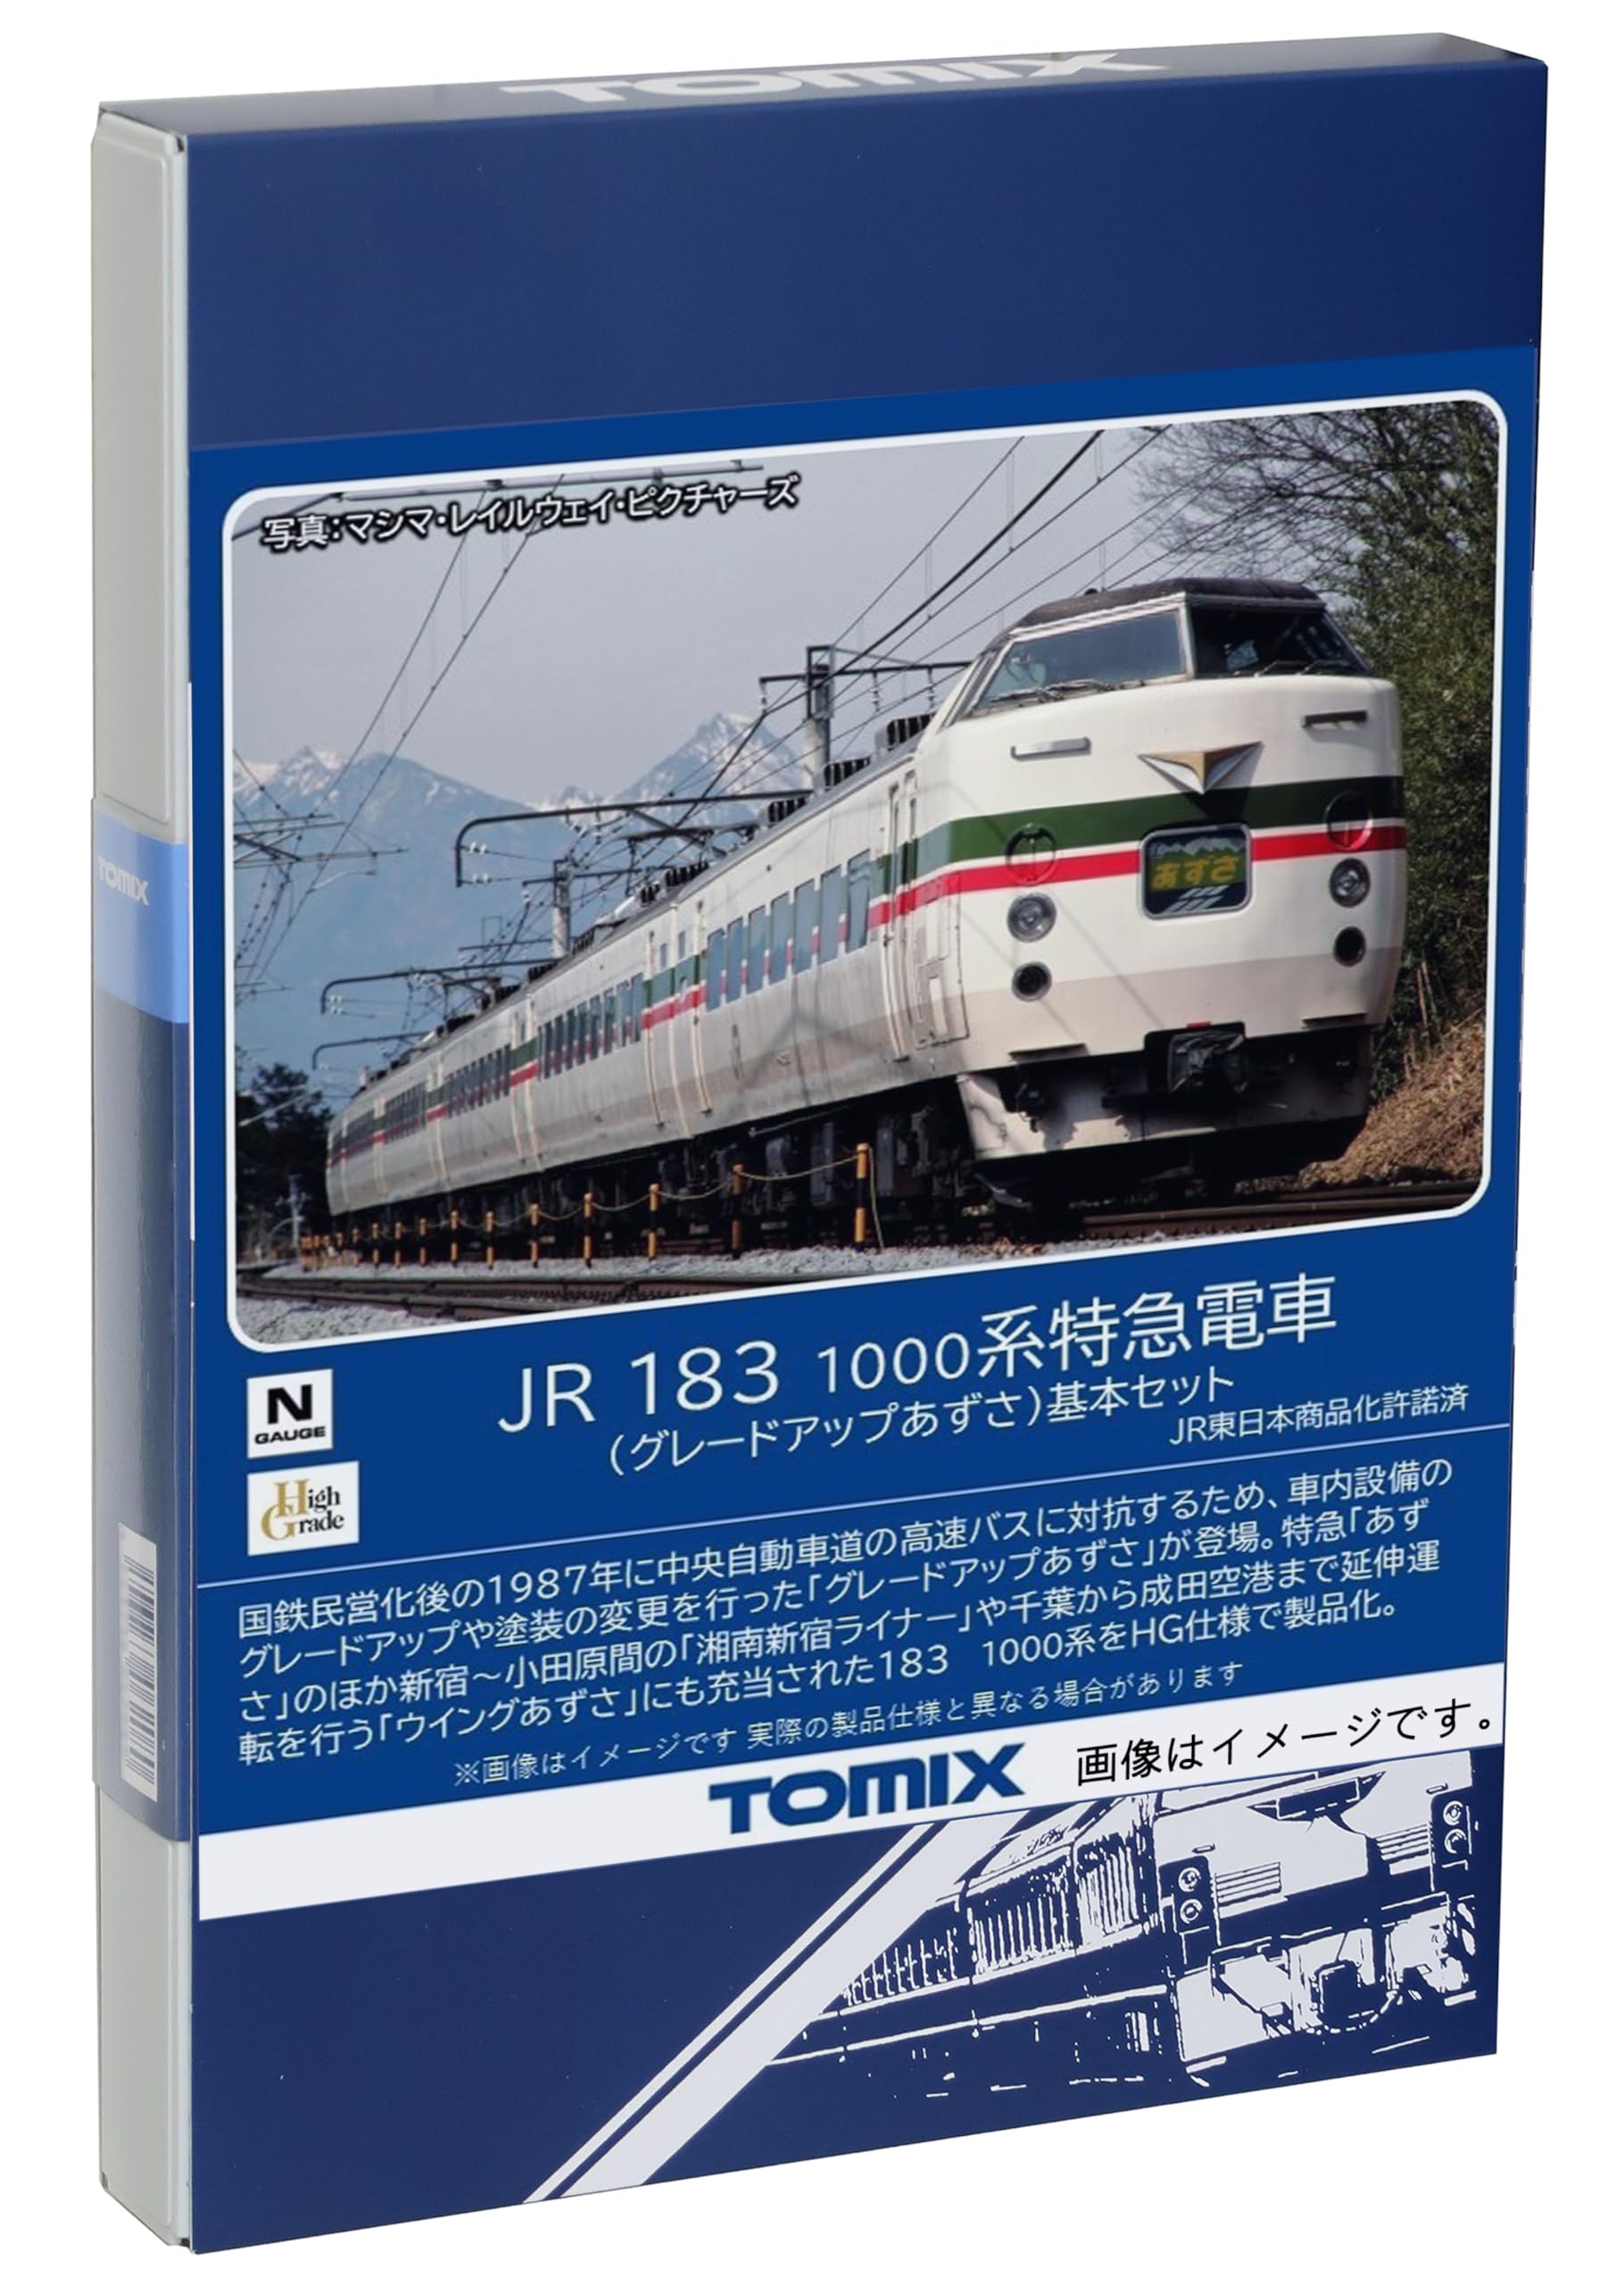 Tomytec Japan N Gauge Jr 183 1000 Series Azusa Basic Set 98540 Railway